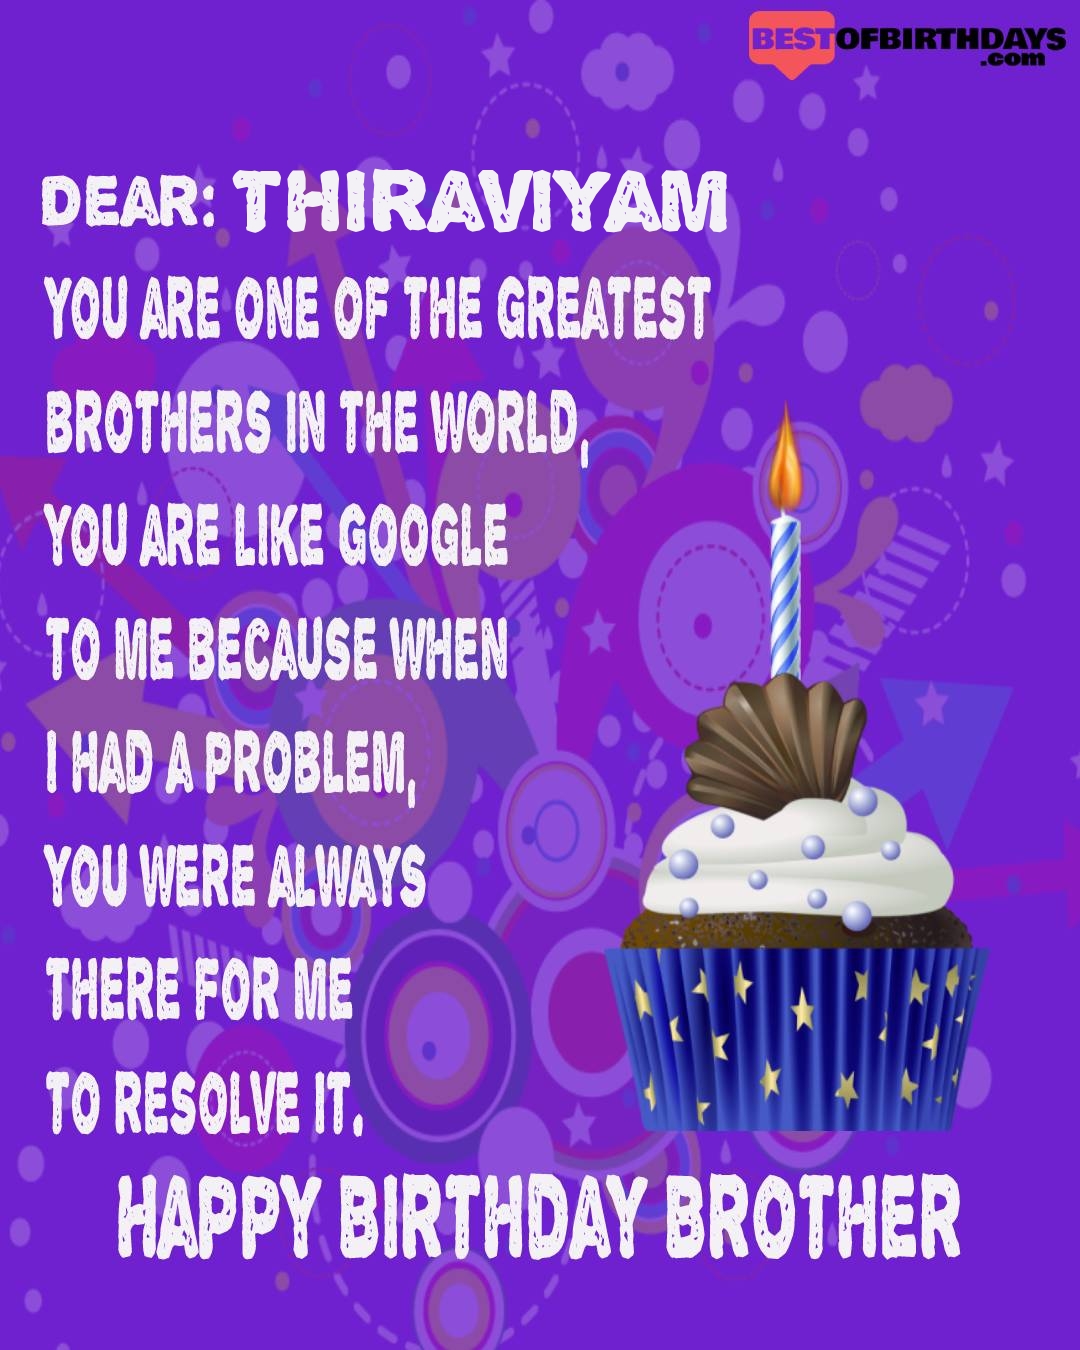 Happy birthday thiraviyam bhai brother bro